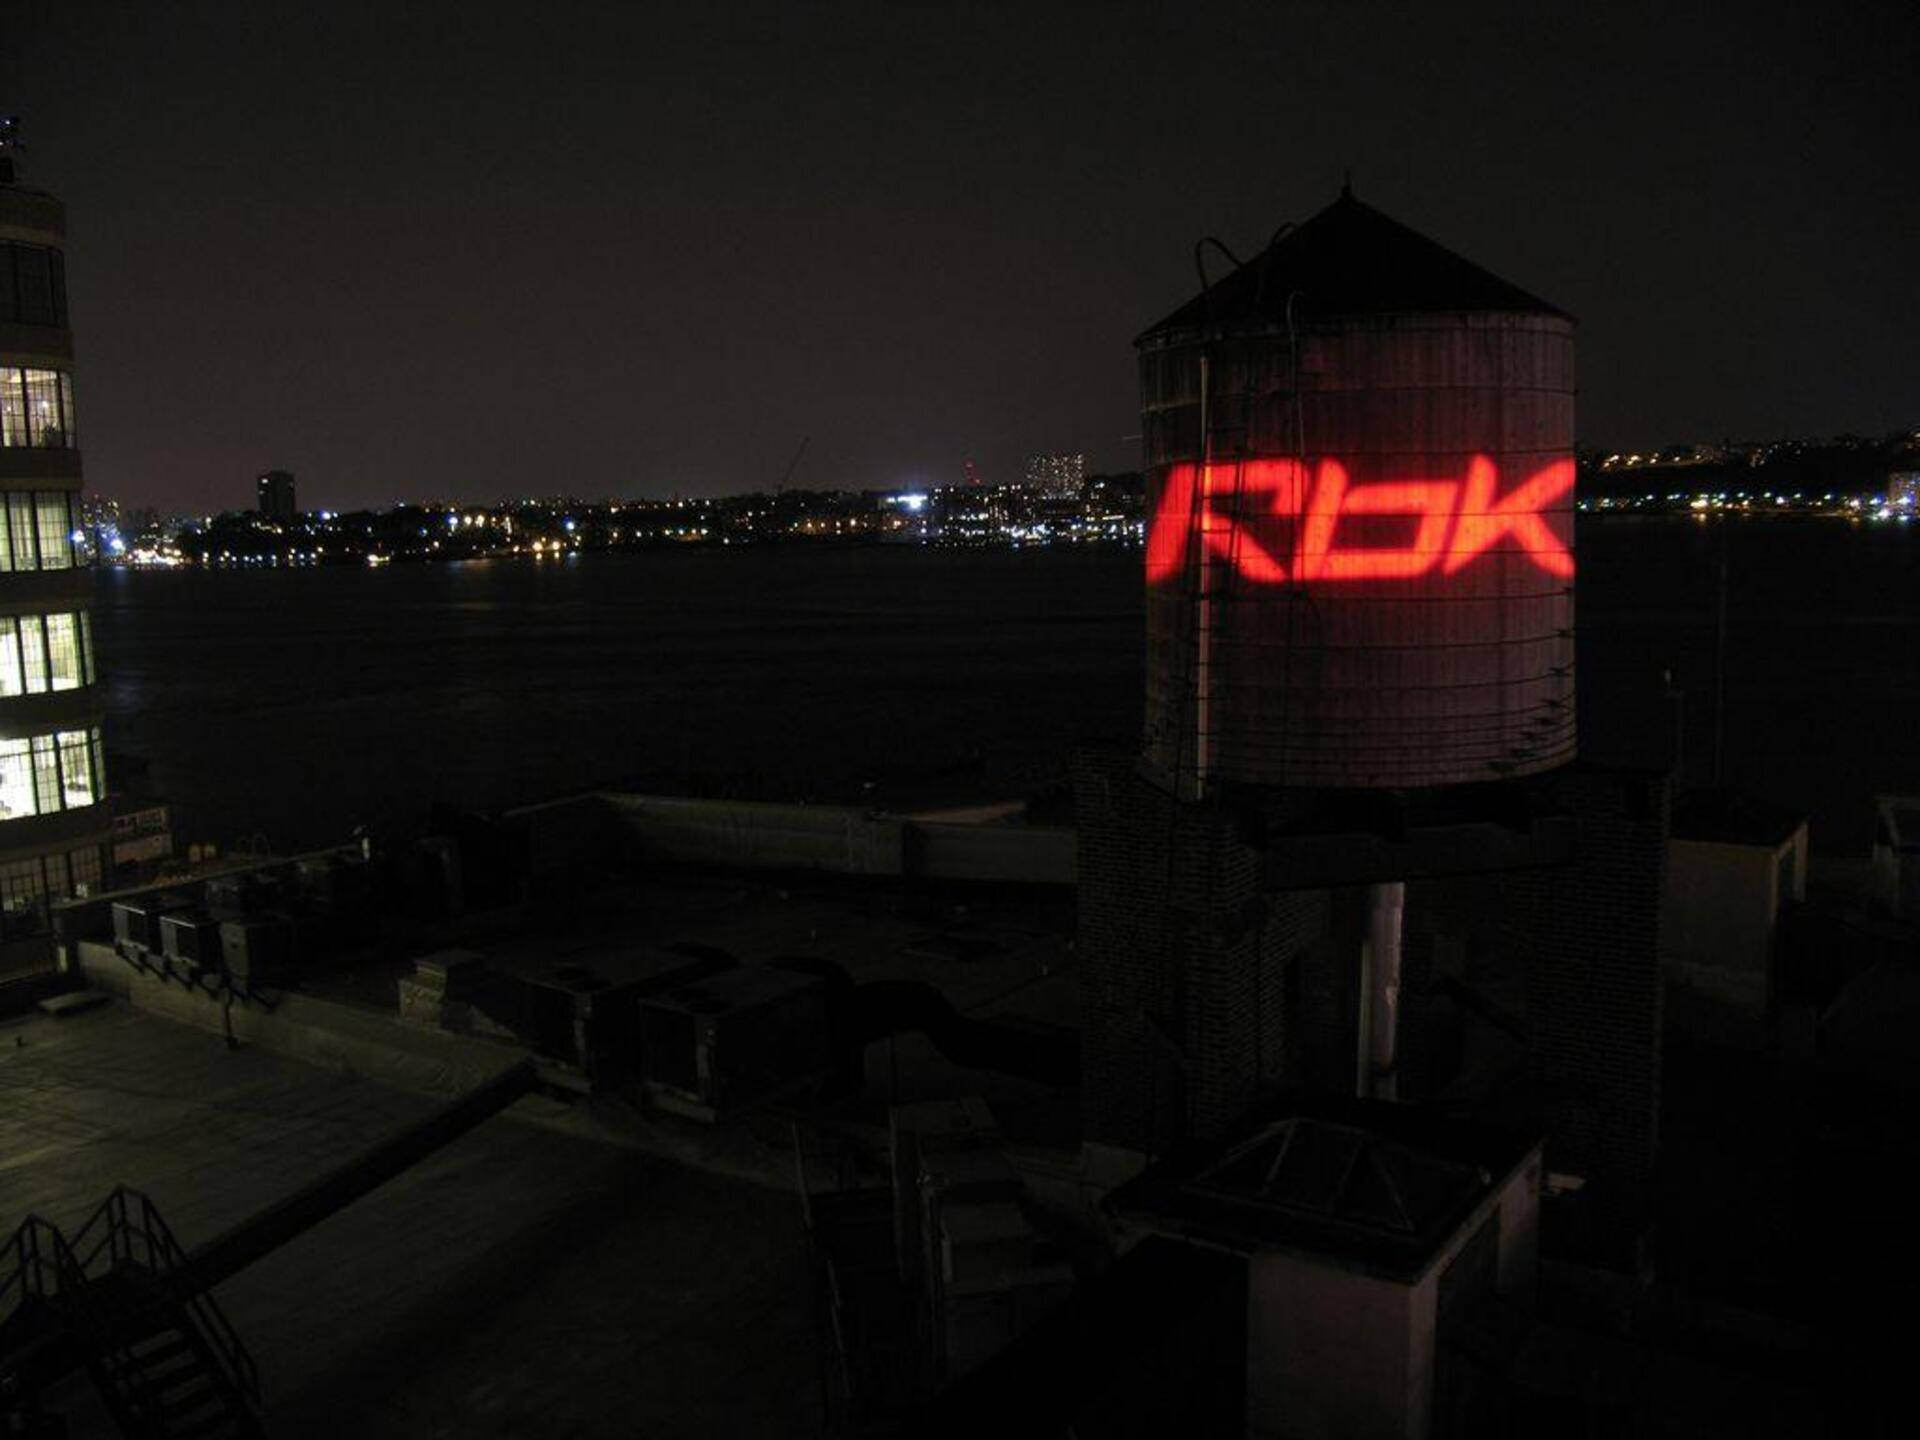 Reebok Rbk Light At Night Wallpaper